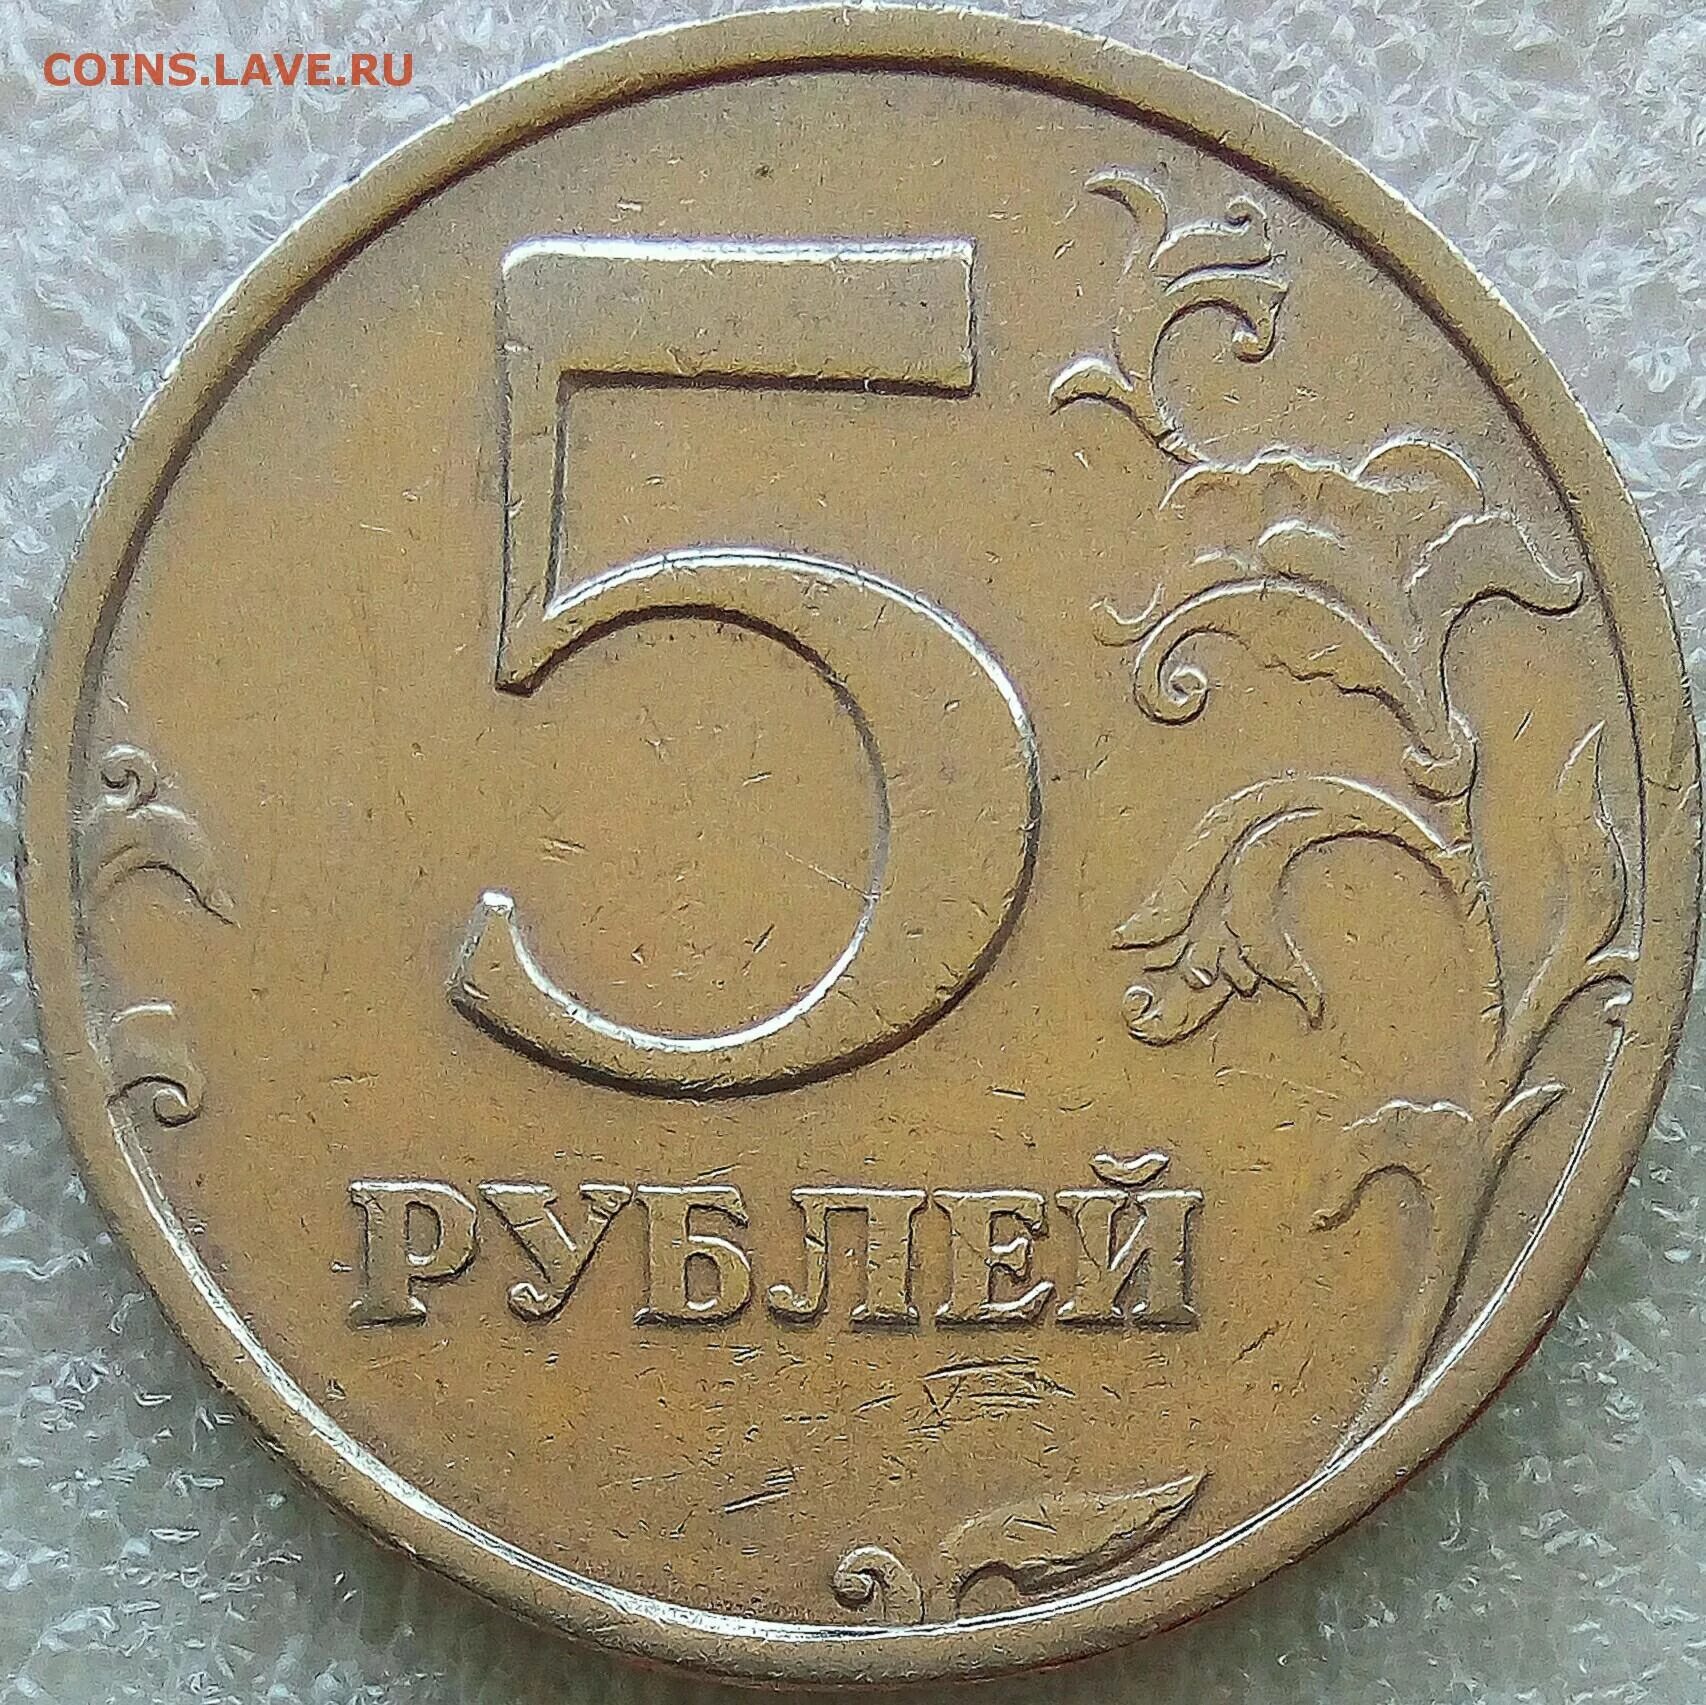 5 рублей редкие года. 2 Рубля 2008 СП. 5 Рублей 1998 года в черном цвете. Покажи на фото 5 рублей 2008 года редкую. 5 Плюс 3 бонусная монета.